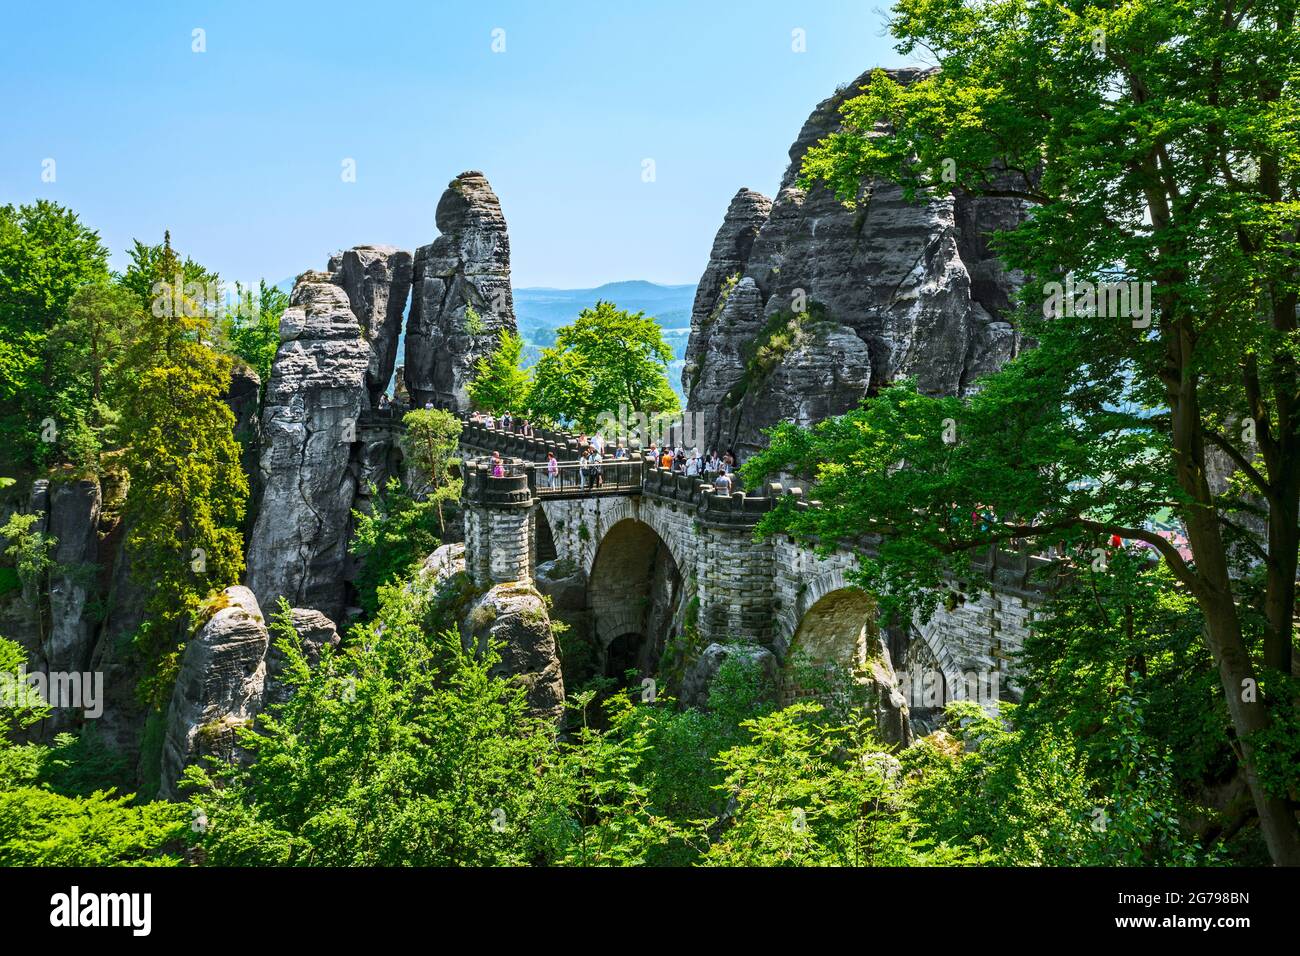 Il Bastei è una formazione rocciosa con una piattaforma di osservazione in Svizzera sassone sulla riva destra dell'Elba nella zona del comune di Lohmen. E' una delle attrazioni turistiche più popolari della Svizzera sassone. Foto Stock